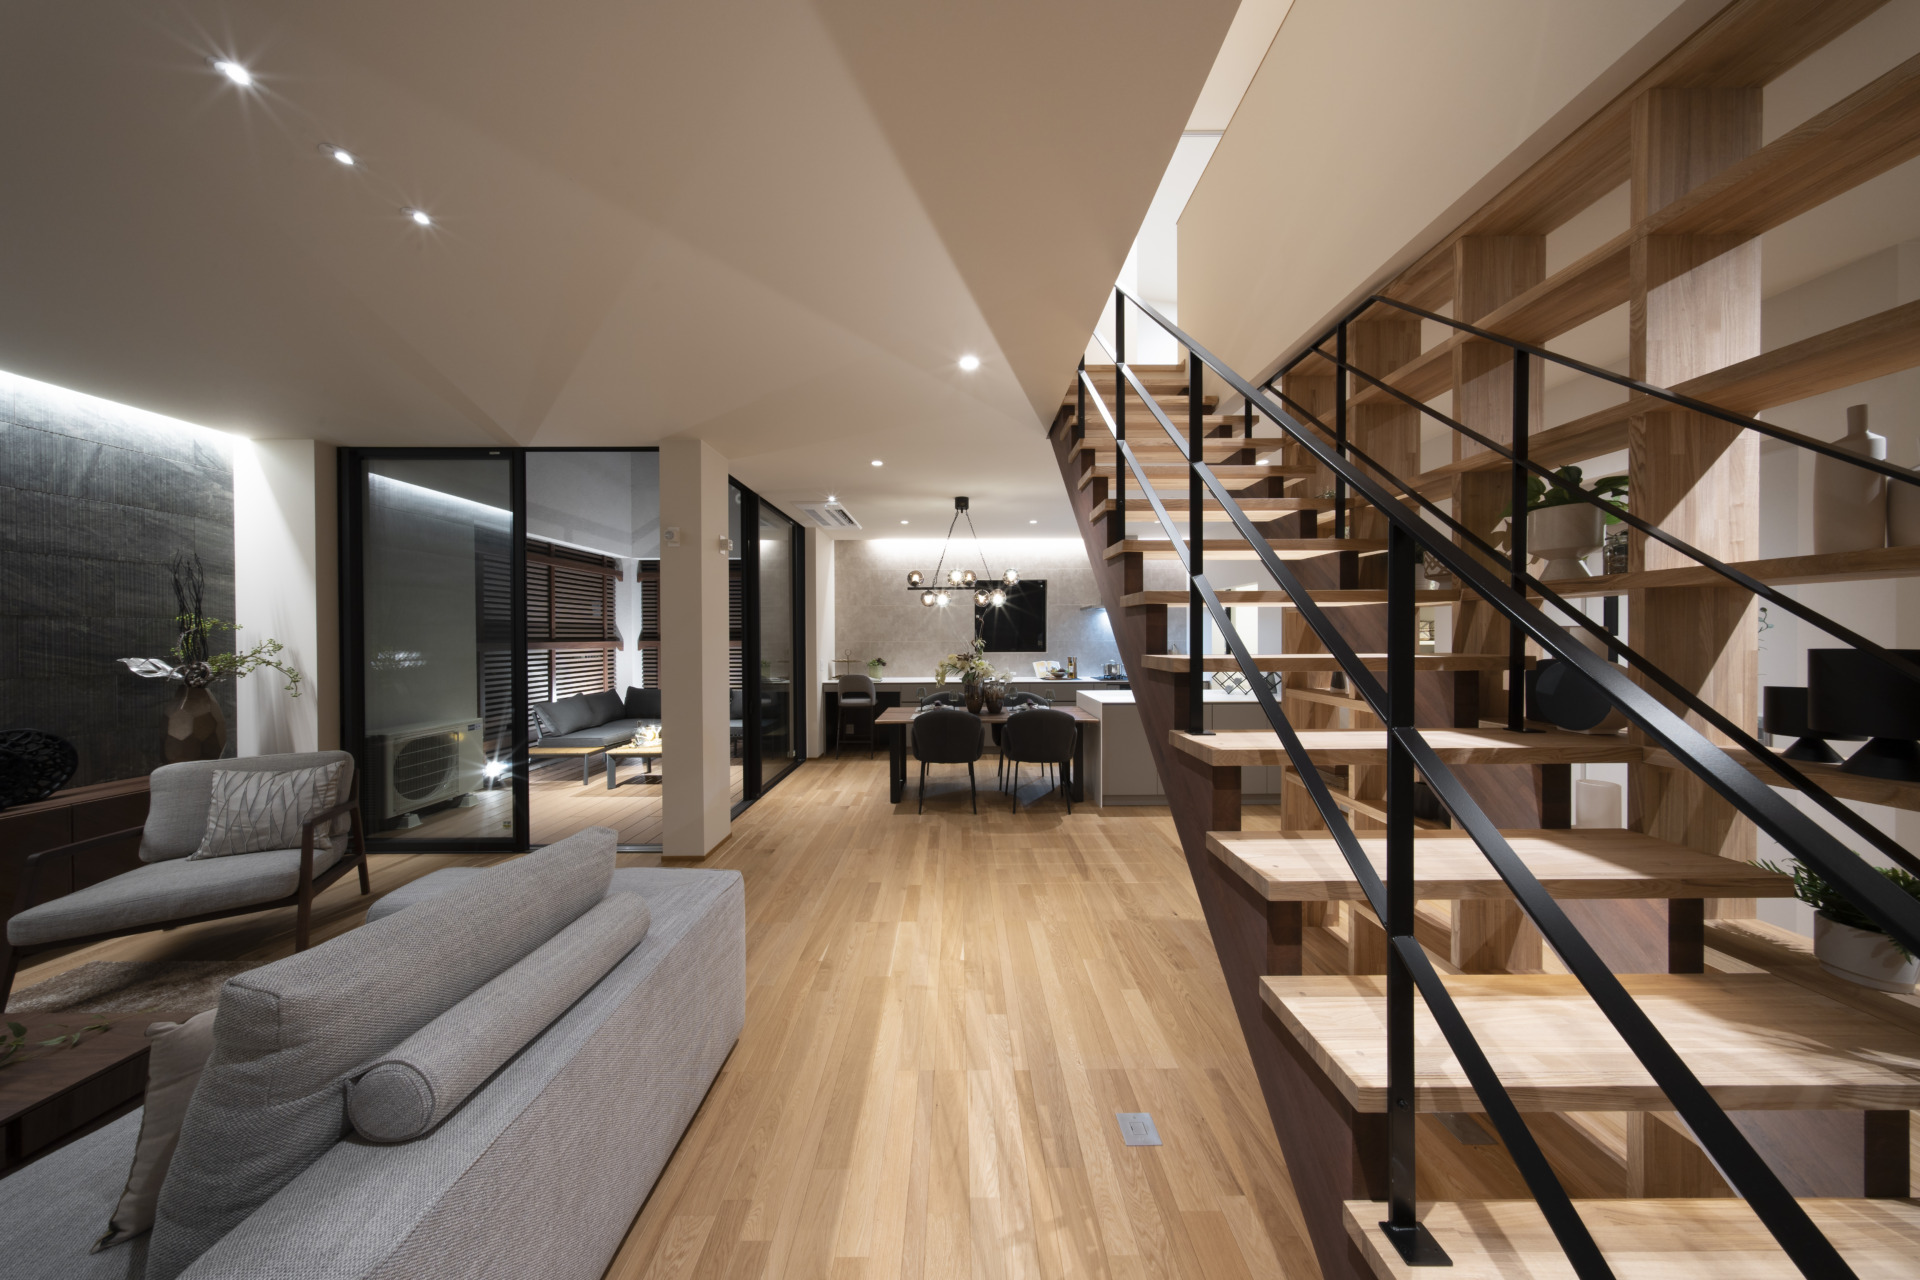 スケルトン階段が魅せる 大空間の広がる家の写真